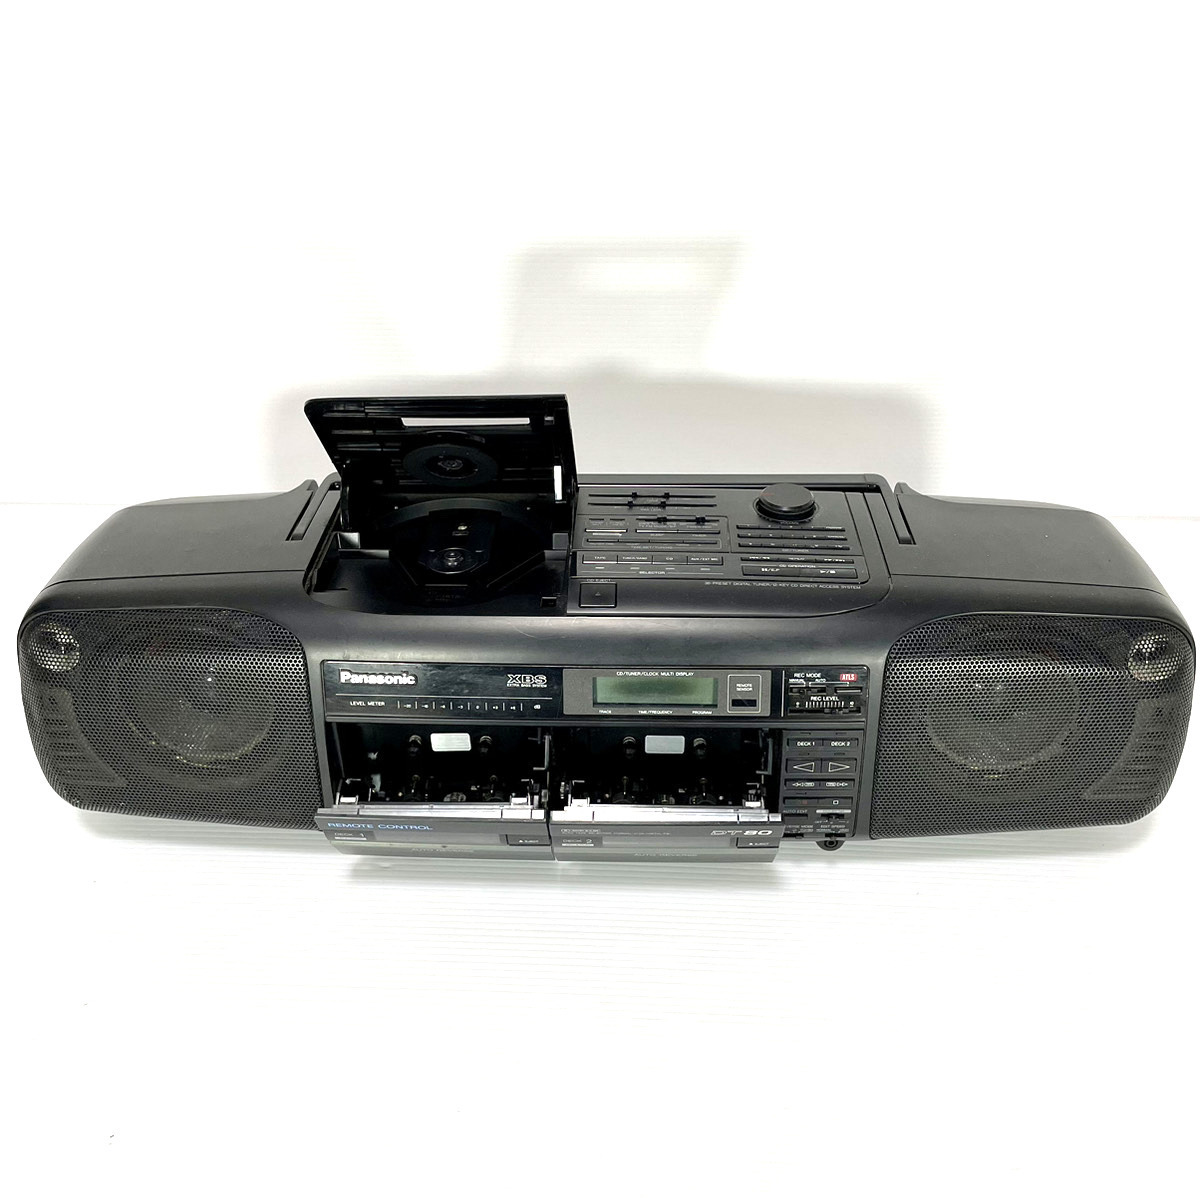 【純正リモコン付/動作美品】Panasonic パナソニック RX-DT80 EUR64762 バブルラジカセ CD ラジオ カセット Tape AM FM RX-DT70 兄弟機の画像2